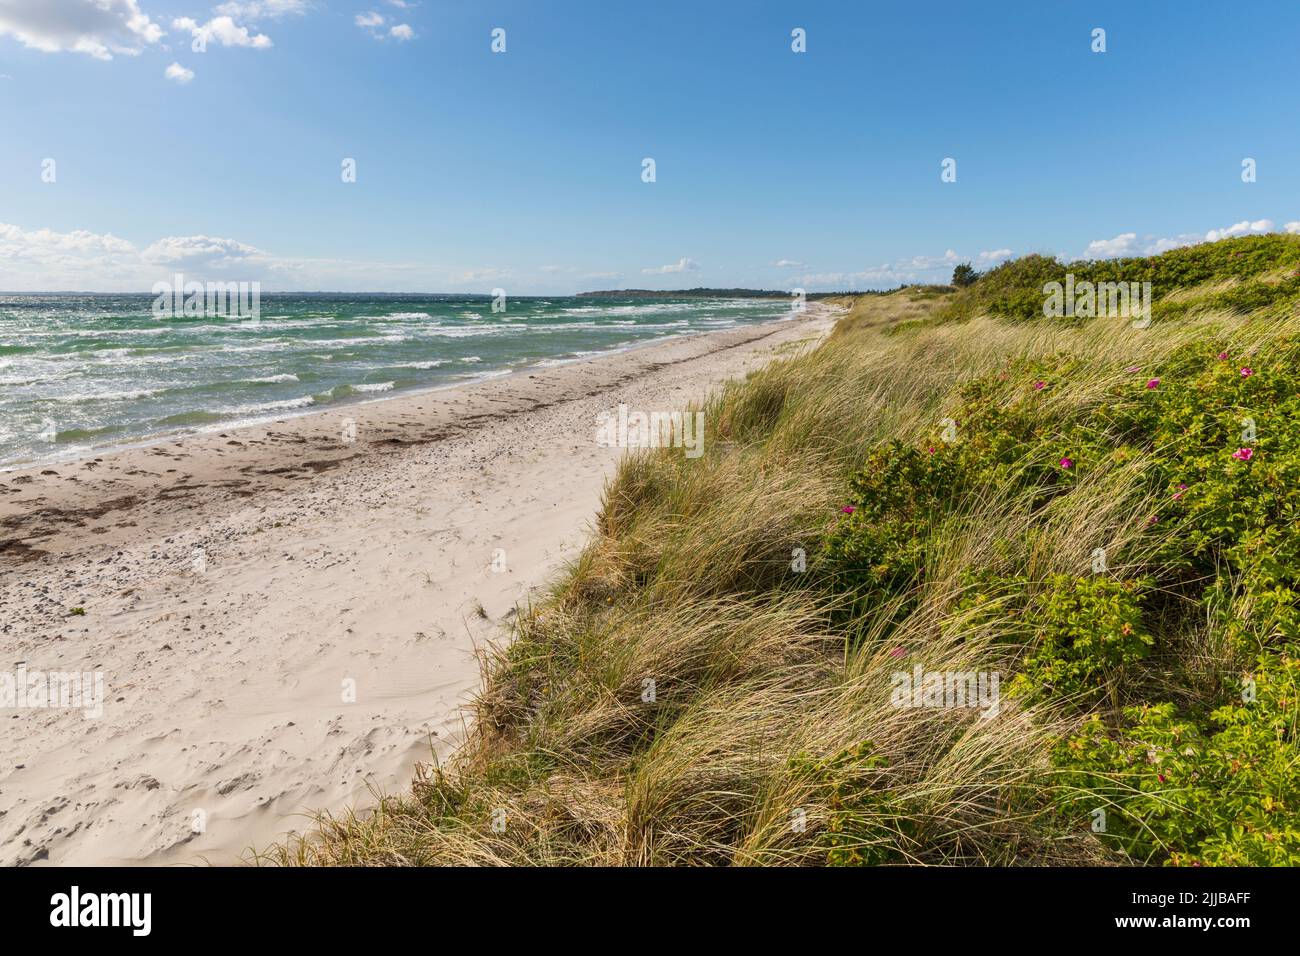 Playa y dunas del Mar Báltico en Ristinge, Langeland, Dinamarca Foto de stock